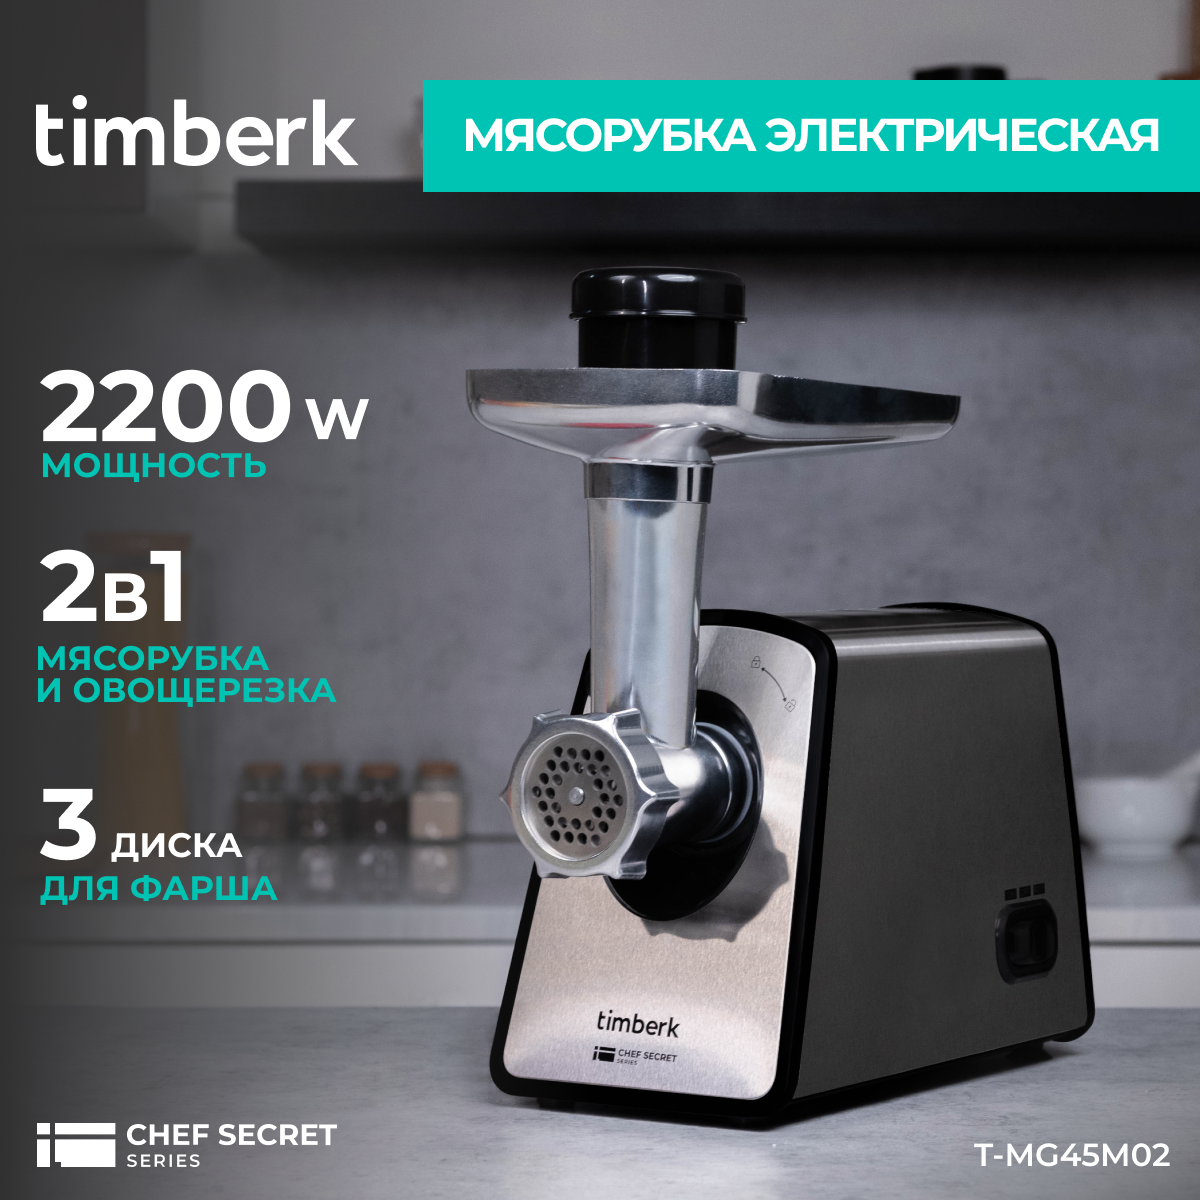 Электромясорубка Timberk T-MG45M02 450 Вт серебристая